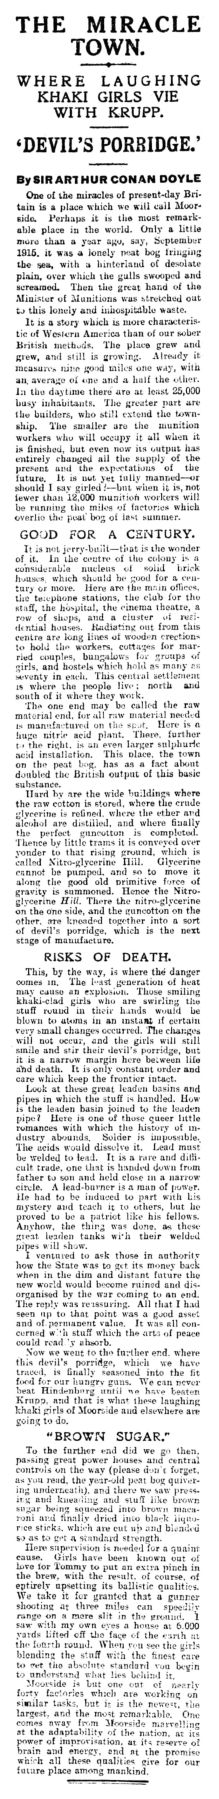 Daily Express (28 november 1916, p. 4)